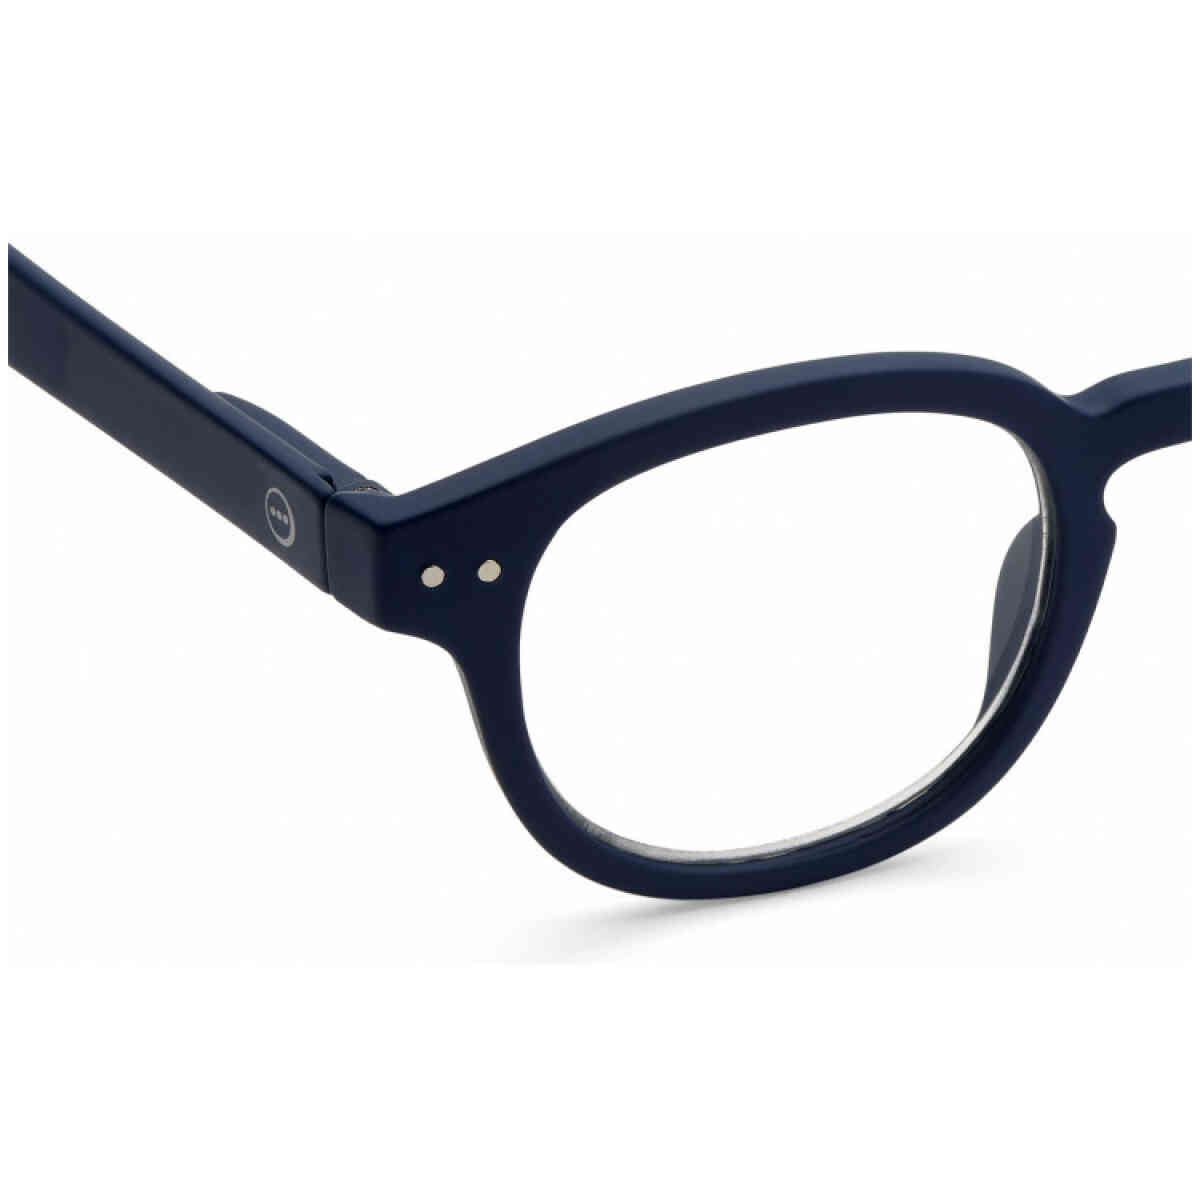 c navy blue reading glasses 2